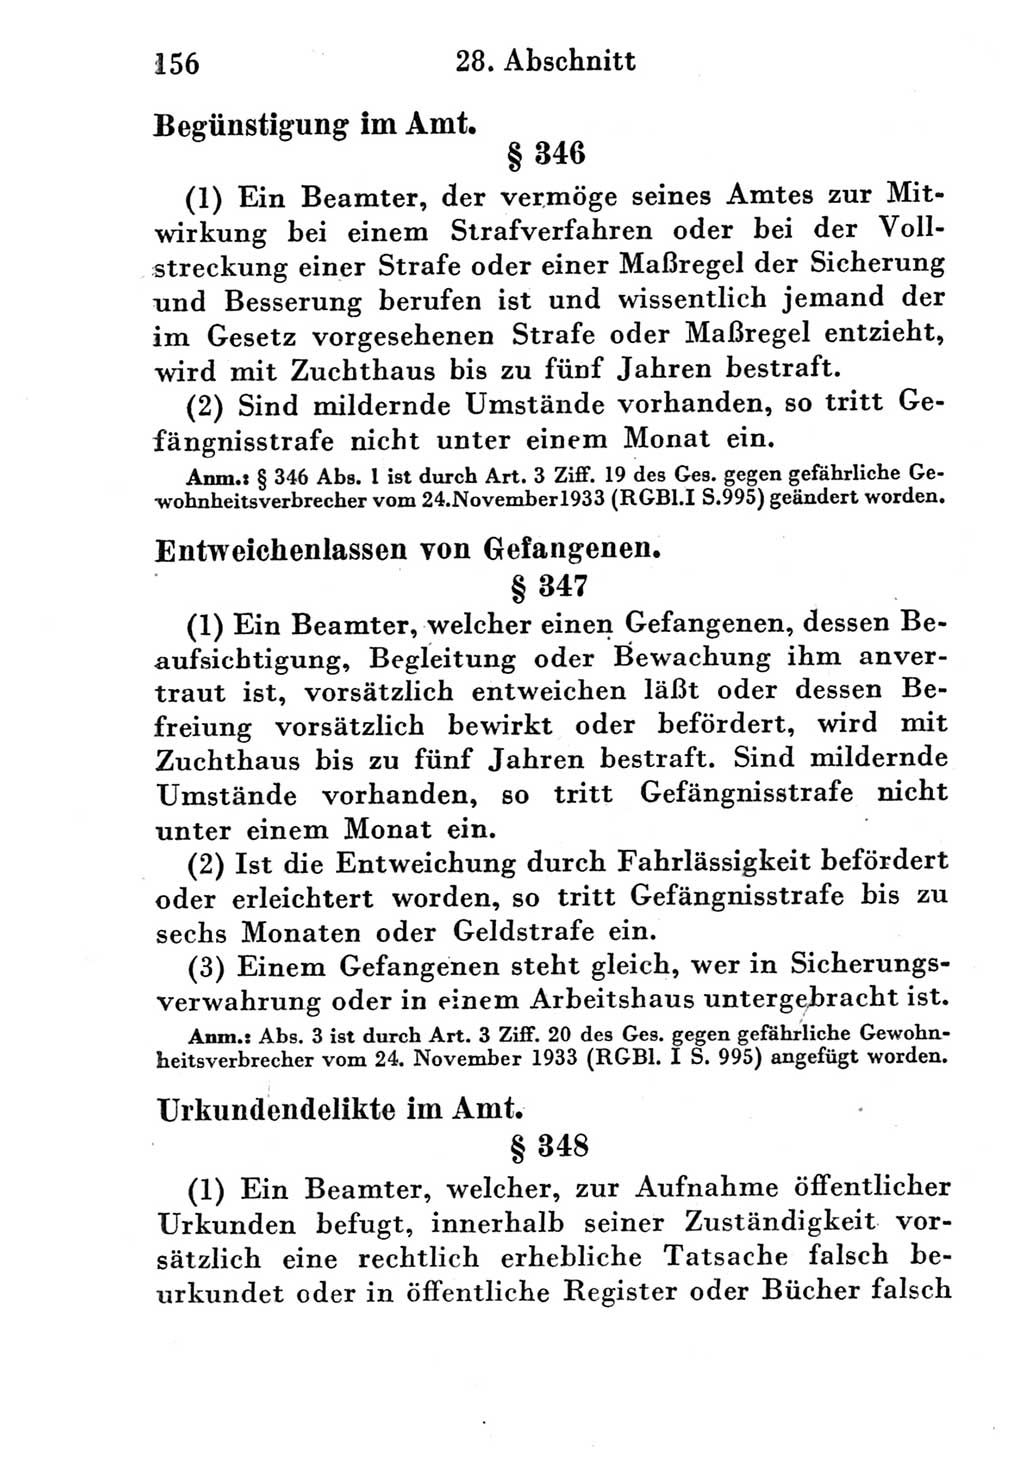 Strafgesetzbuch (StGB) und andere Strafgesetze [Deutsche Demokratische Republik (DDR)] 1951, Seite 156 (StGB Strafges. DDR 1951, S. 156)